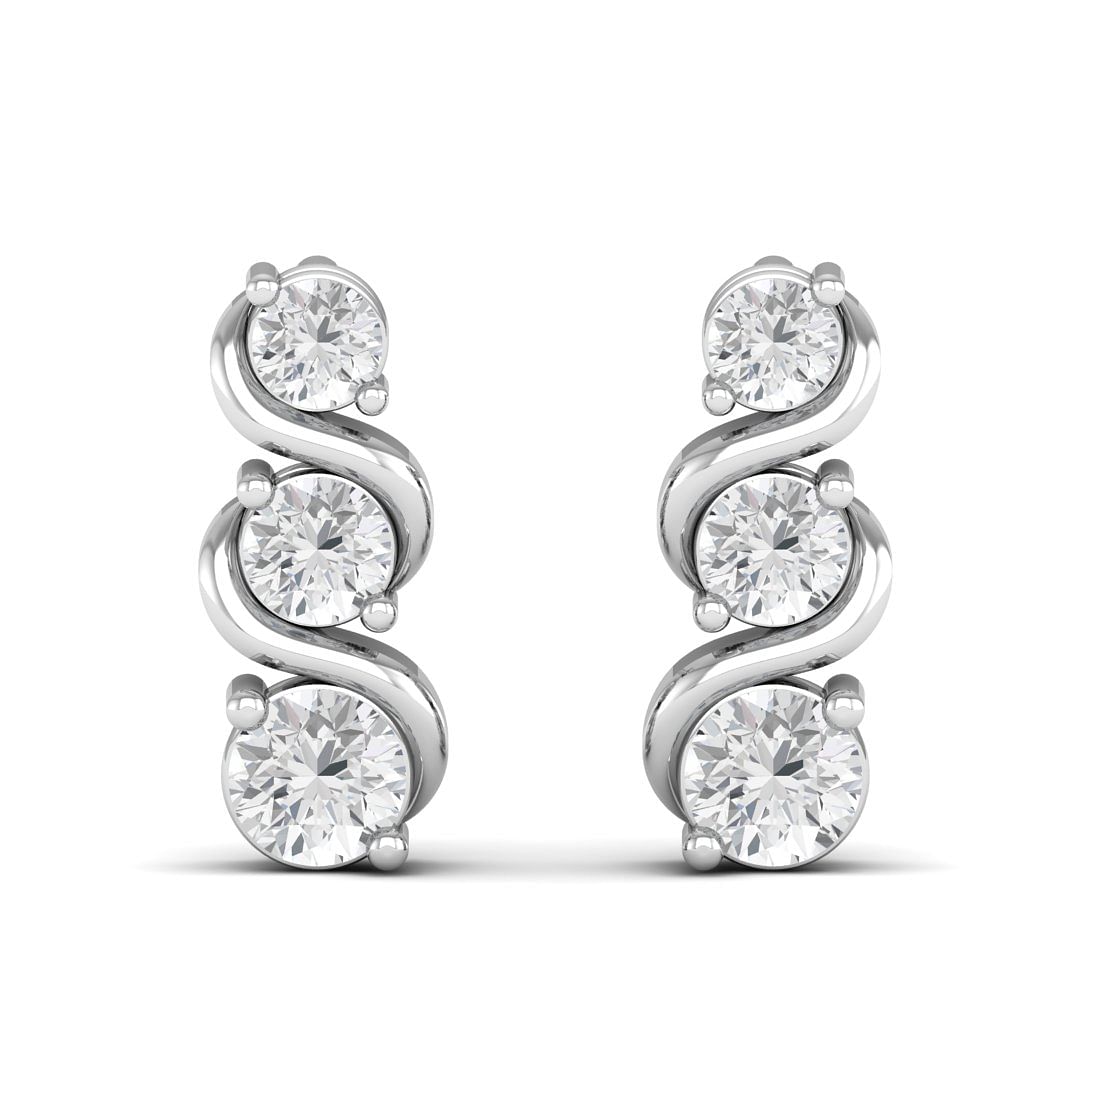 Chavvi Drop White Gold Diamond Earrings For Bridal Gift